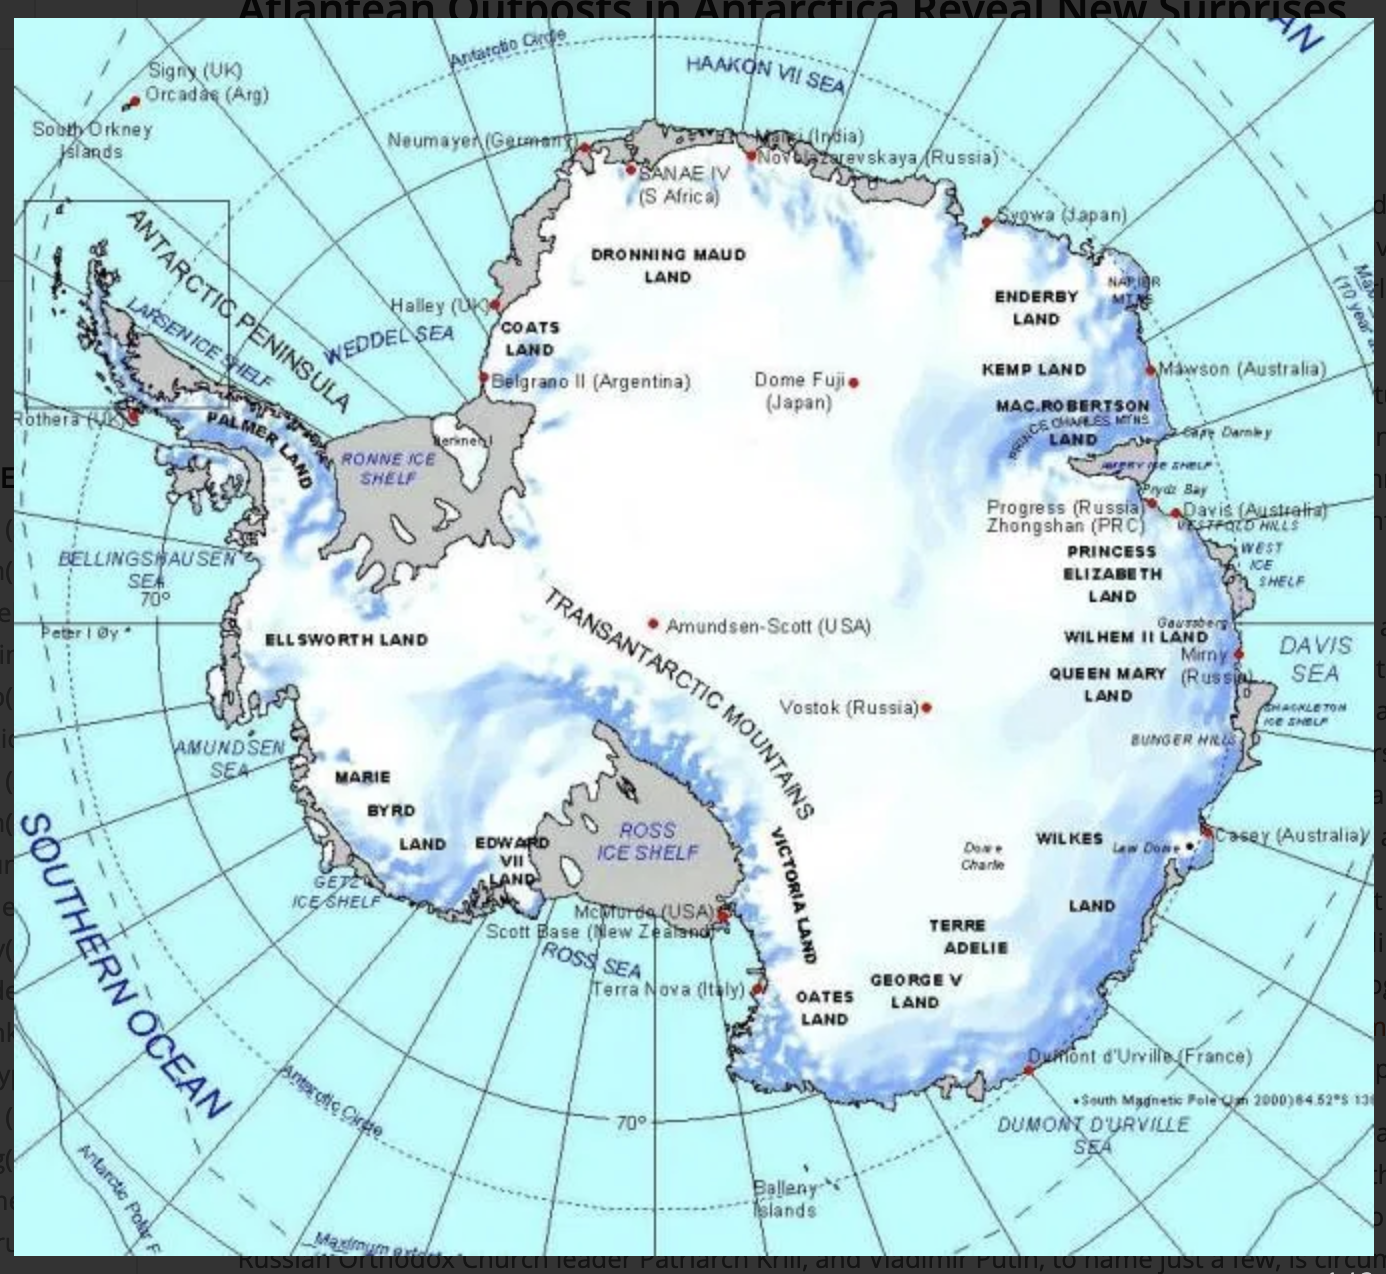 Полуостров южного океана. Долина МГГ на карте Антарктиды. Полюс недоступности в Антарктиде на карте. Антарктический полуостров на карте Антарктиды. Остров Петра i на карте Антарктиды.